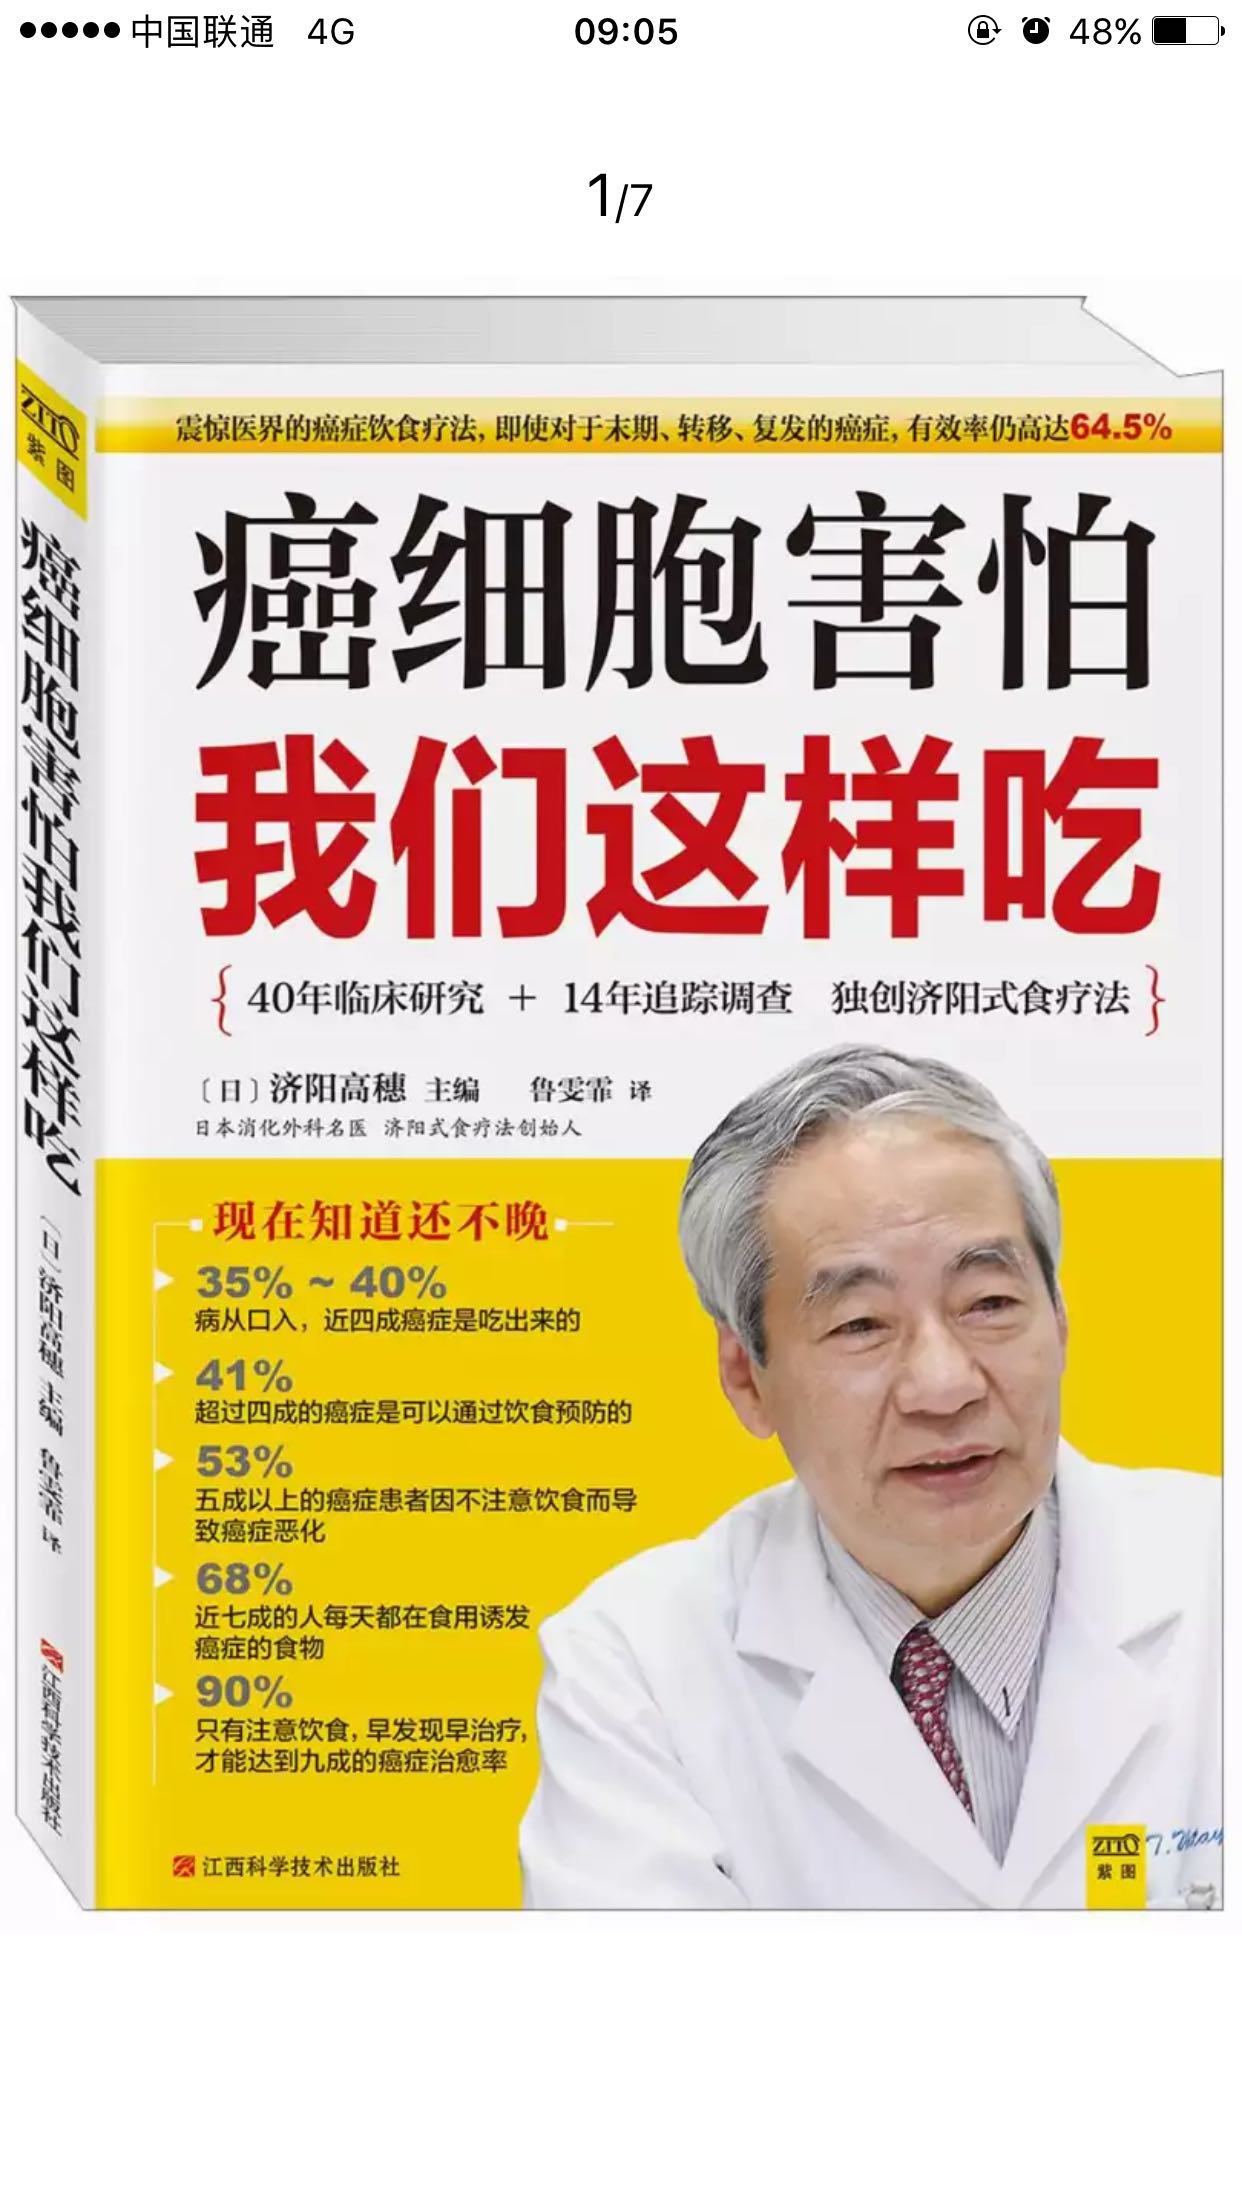 老爸生病了，做了手术。买这本书给他和妈妈看看，以后的生活饮食一定要注意。老年人真的要保重身体。